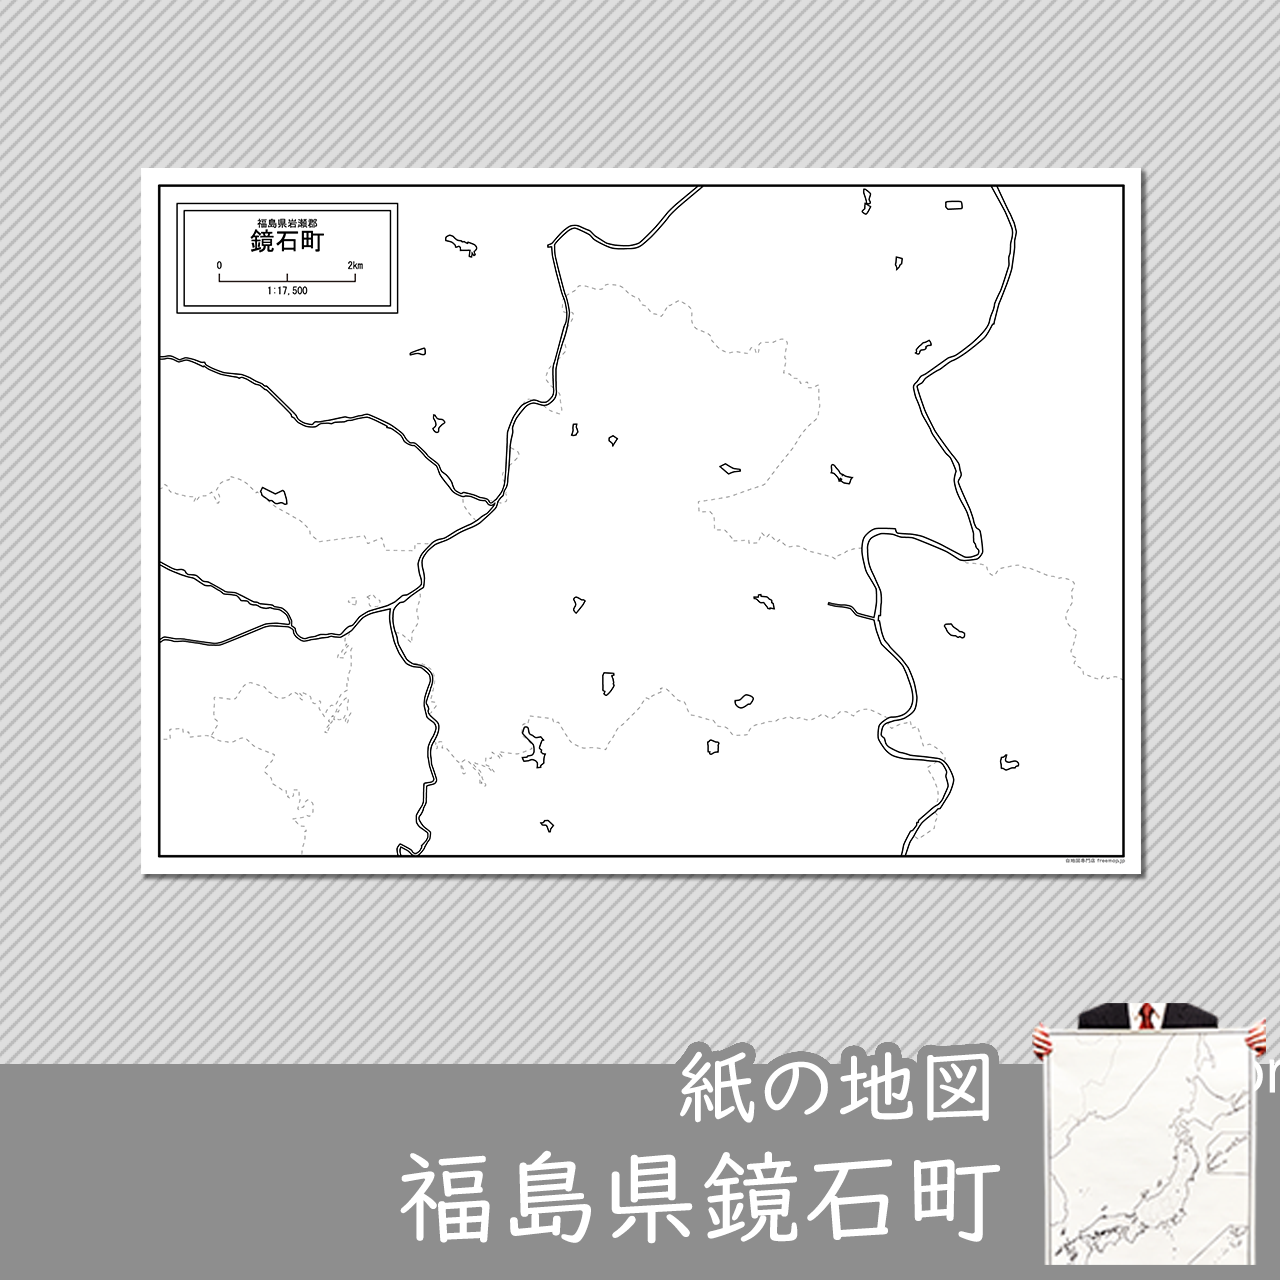 鏡石町の紙の白地図のサムネイル